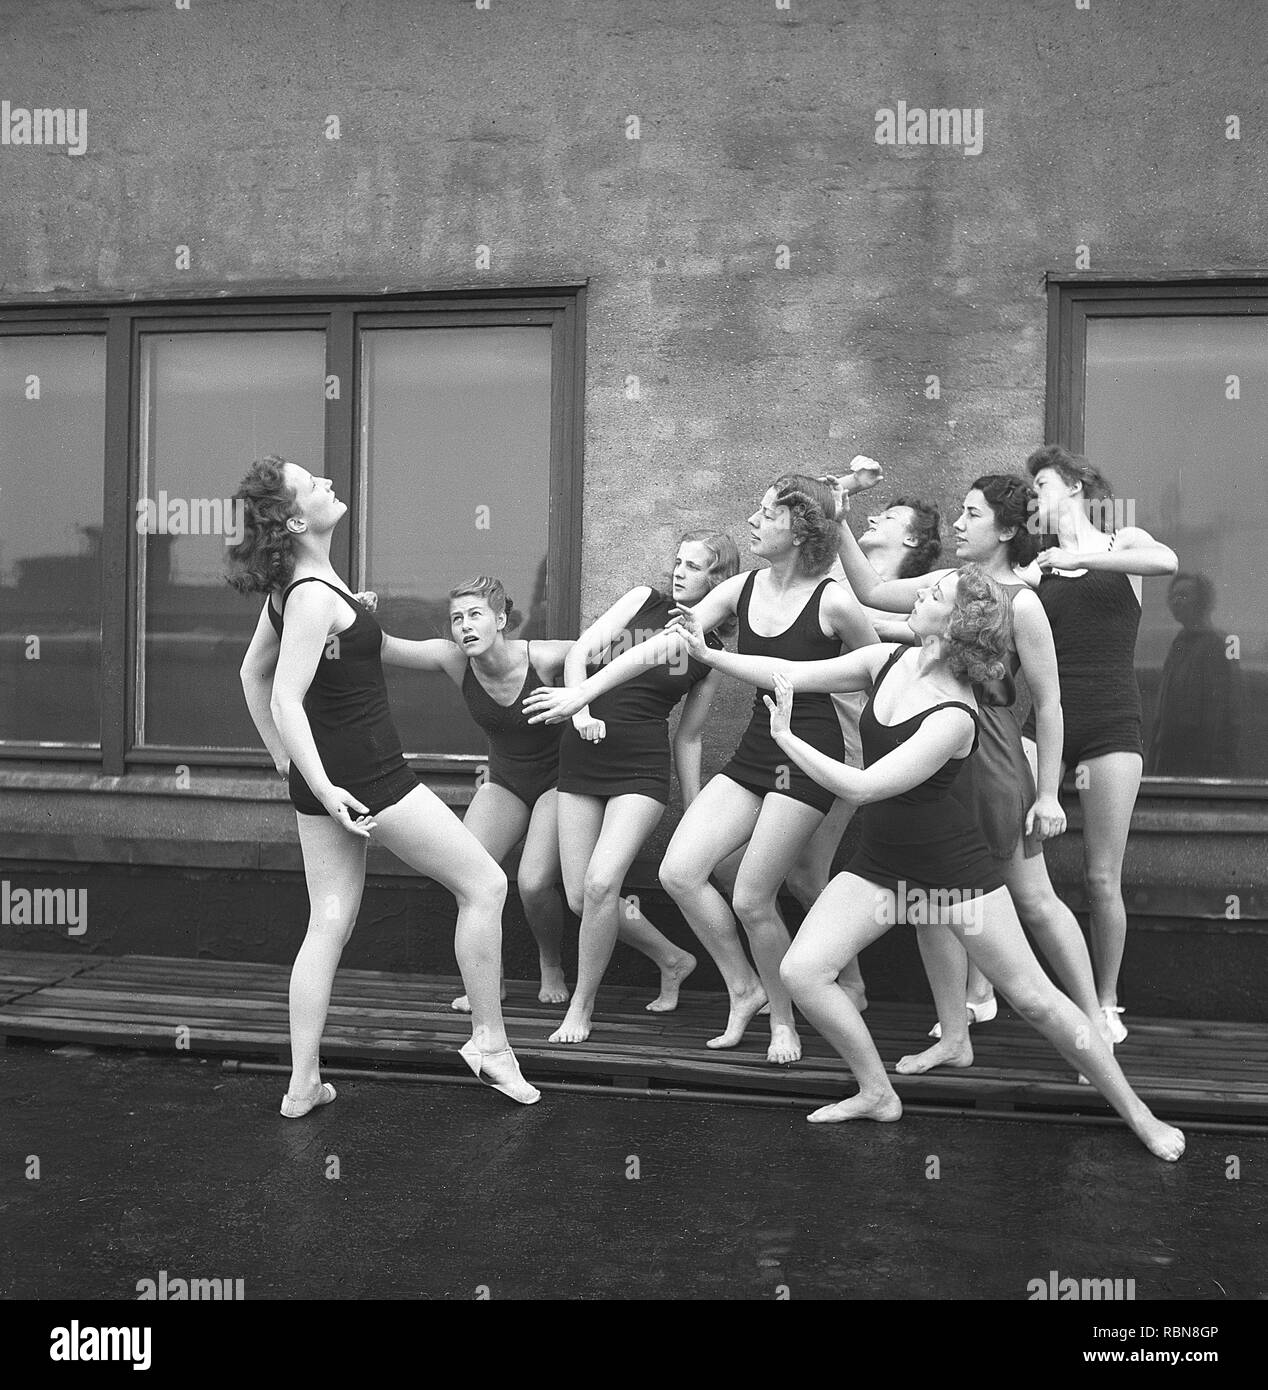 Les gymnastes, dans les années 40. Un groupe de femmes gymnastes s'entraînent ensemble sur un sommet d'un bâtiment. Photo Suède Kristoffersson Ref O7-1-6. Suède 1945 Banque D'Images